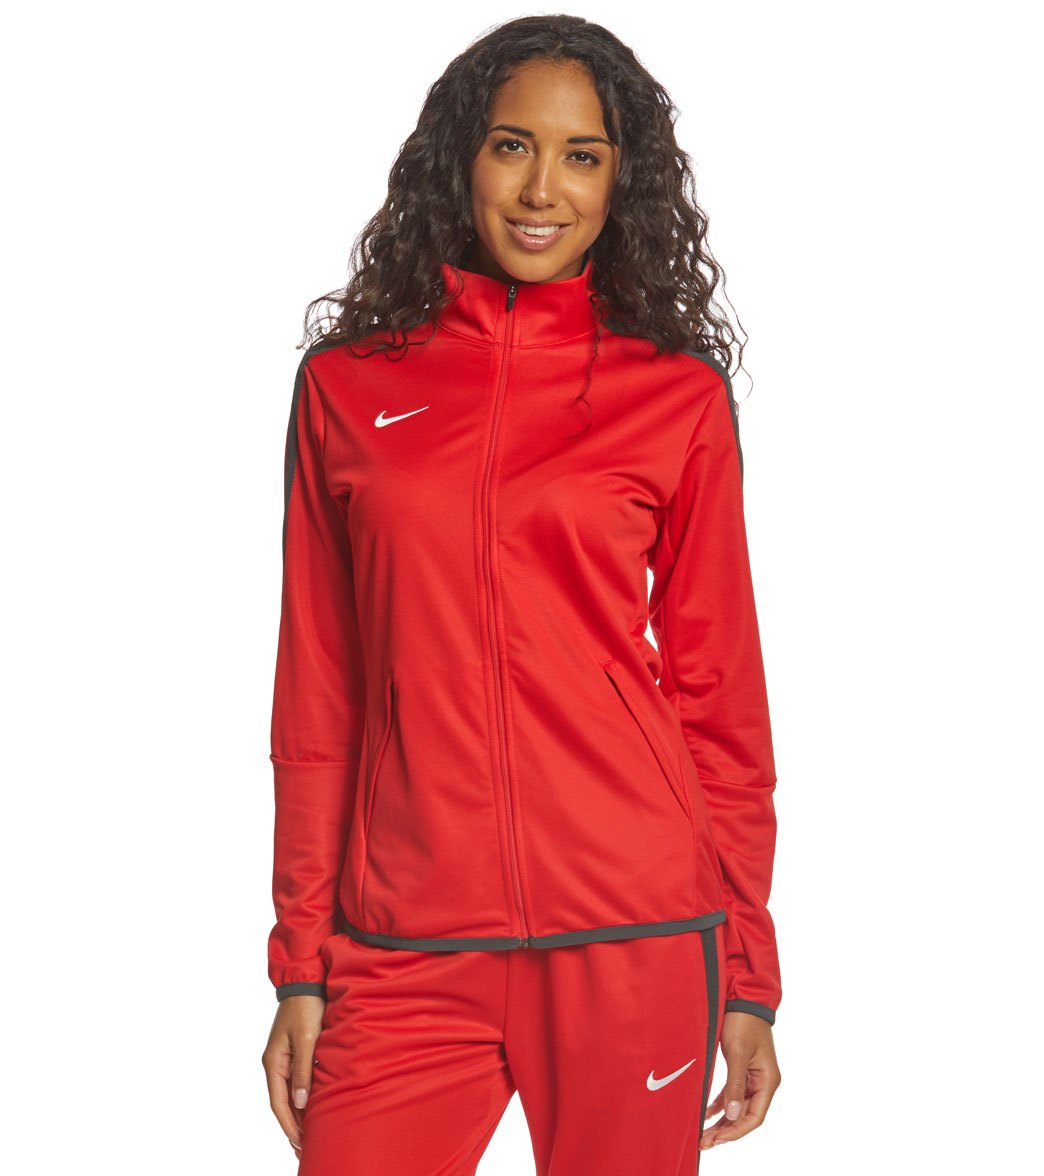 Nike Women's Training Jacket at 